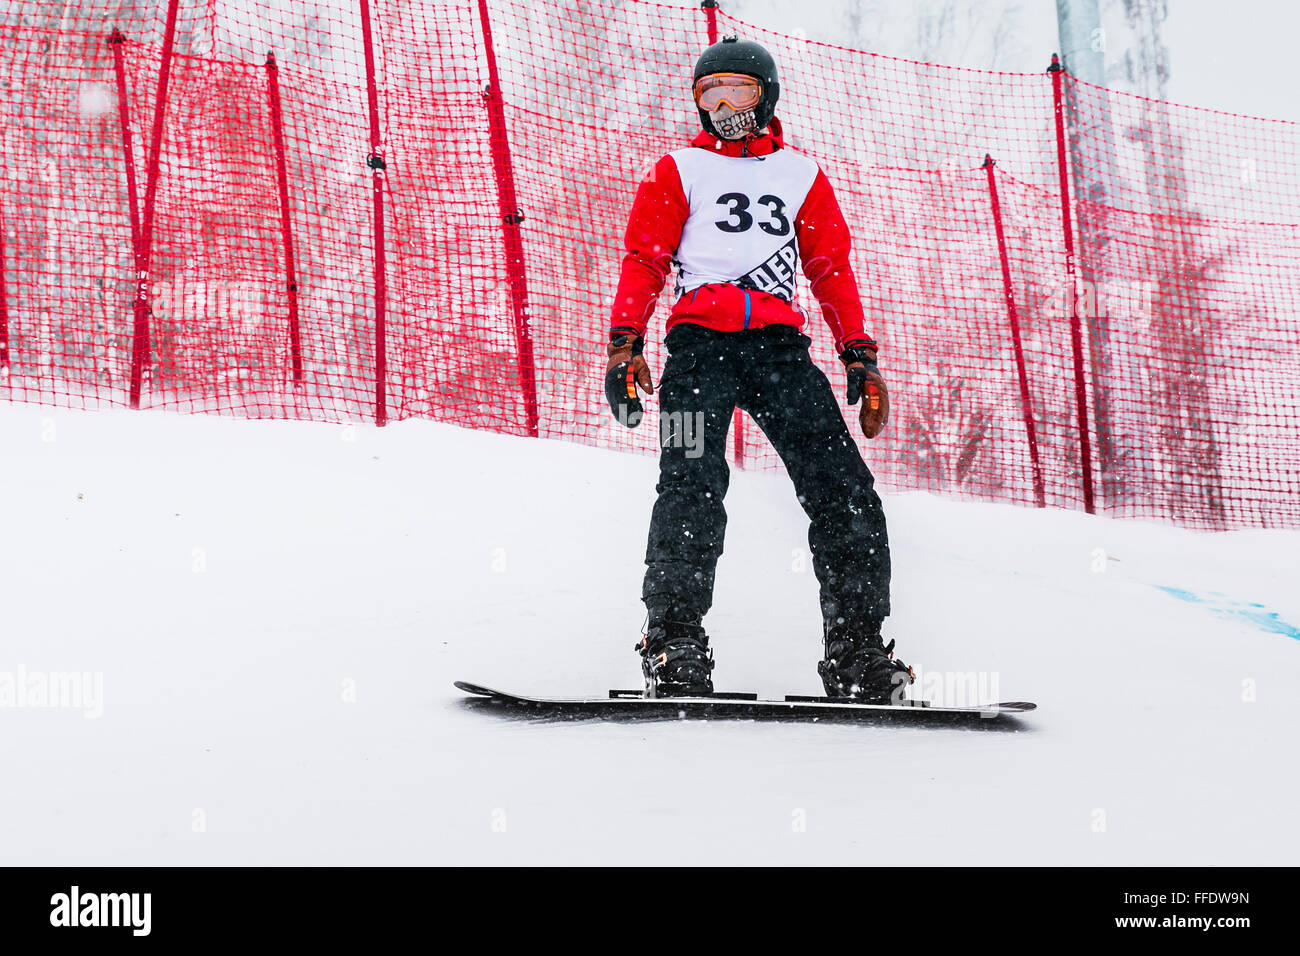 Jeune athlète homme snowboarder durant la compétition s'arrête sur la pente de montagne Banque D'Images